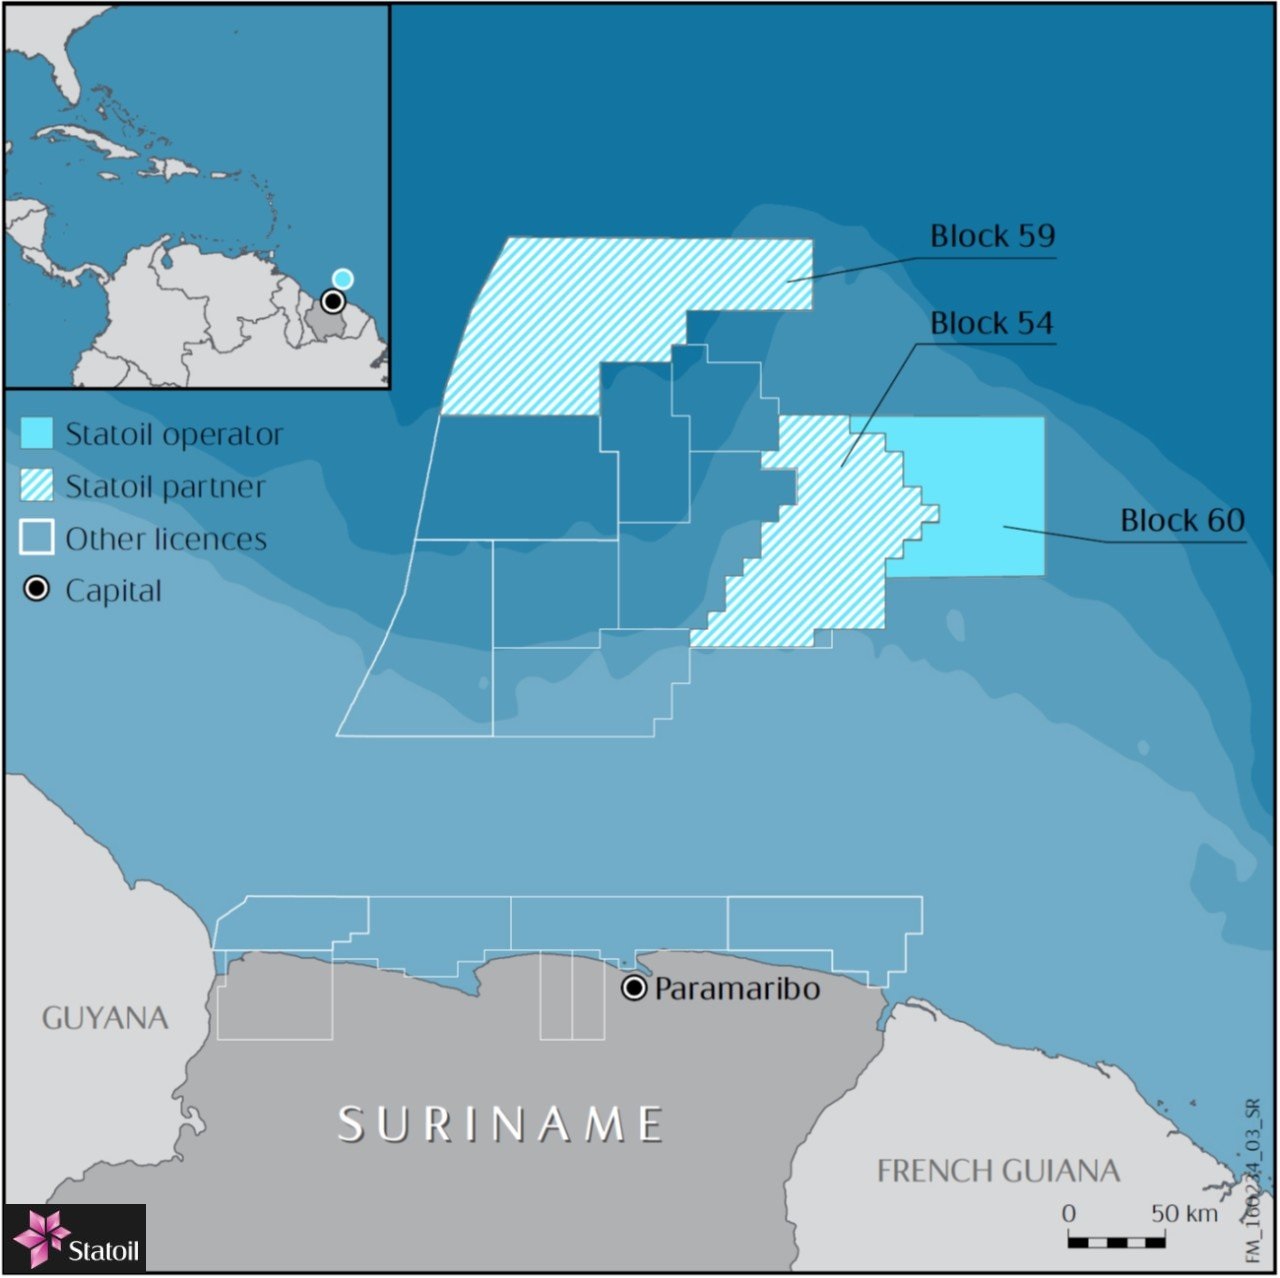 Statoil: Suriname Exploration Position Map